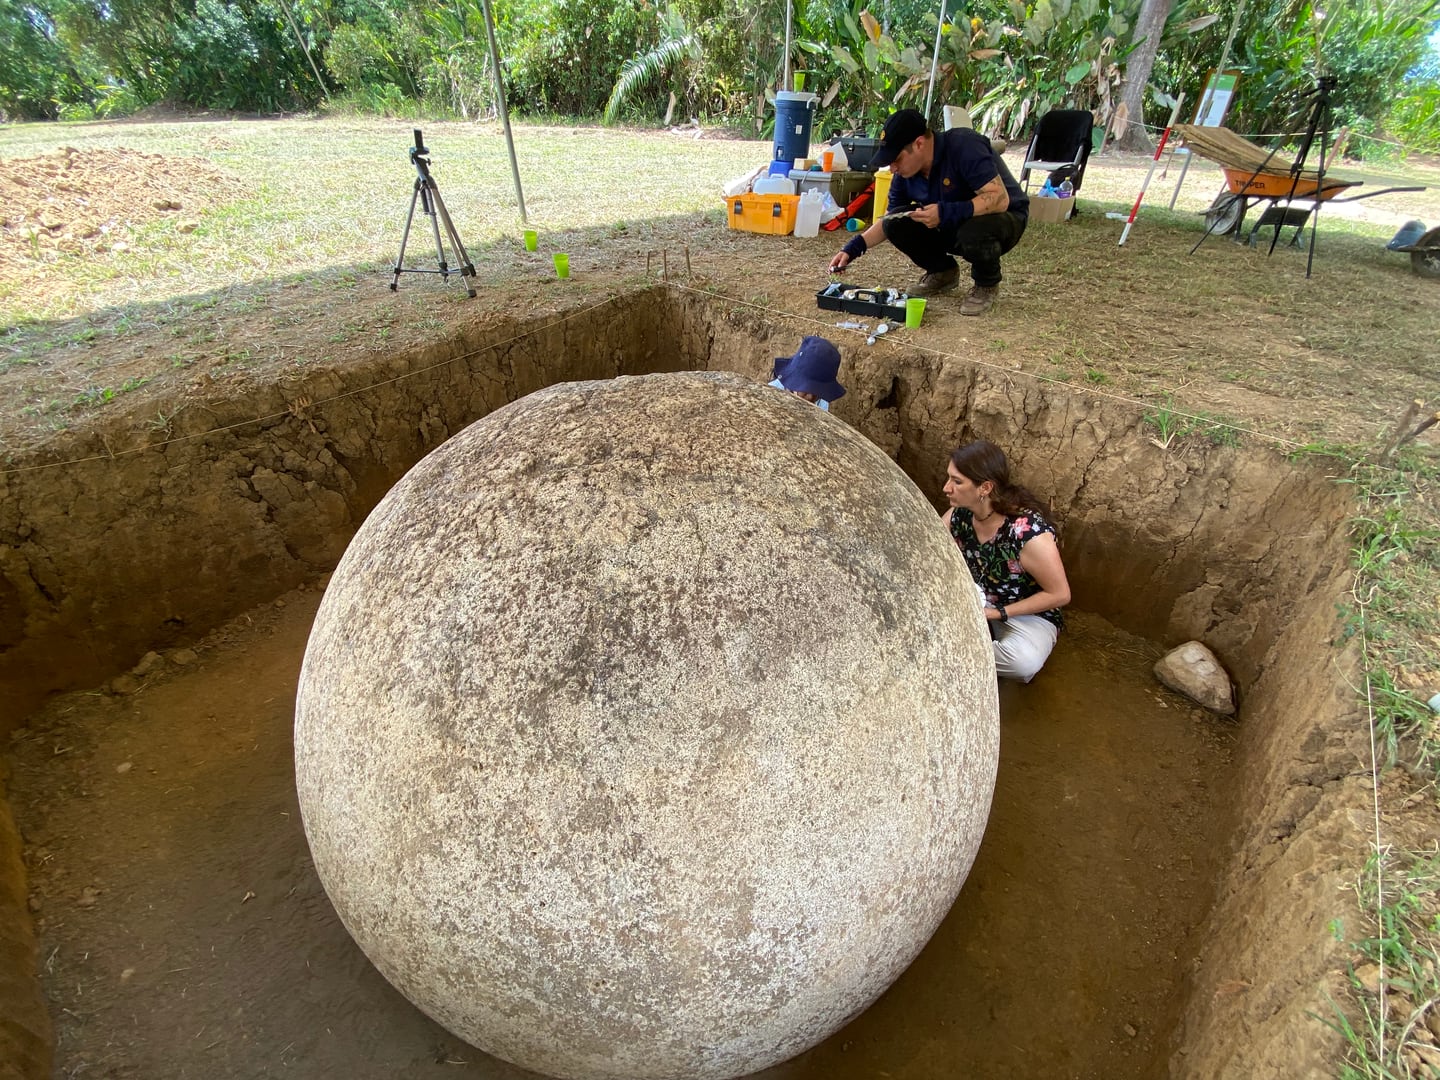 Dos esferas preocolombinas, ubicadas en el monumento arqueológico Finca 6, lugar declarado Patrimonio de la Humanidad por la UNESCO en el 2014, serán chaneadas en el mismo lugar donde fueron encontradas